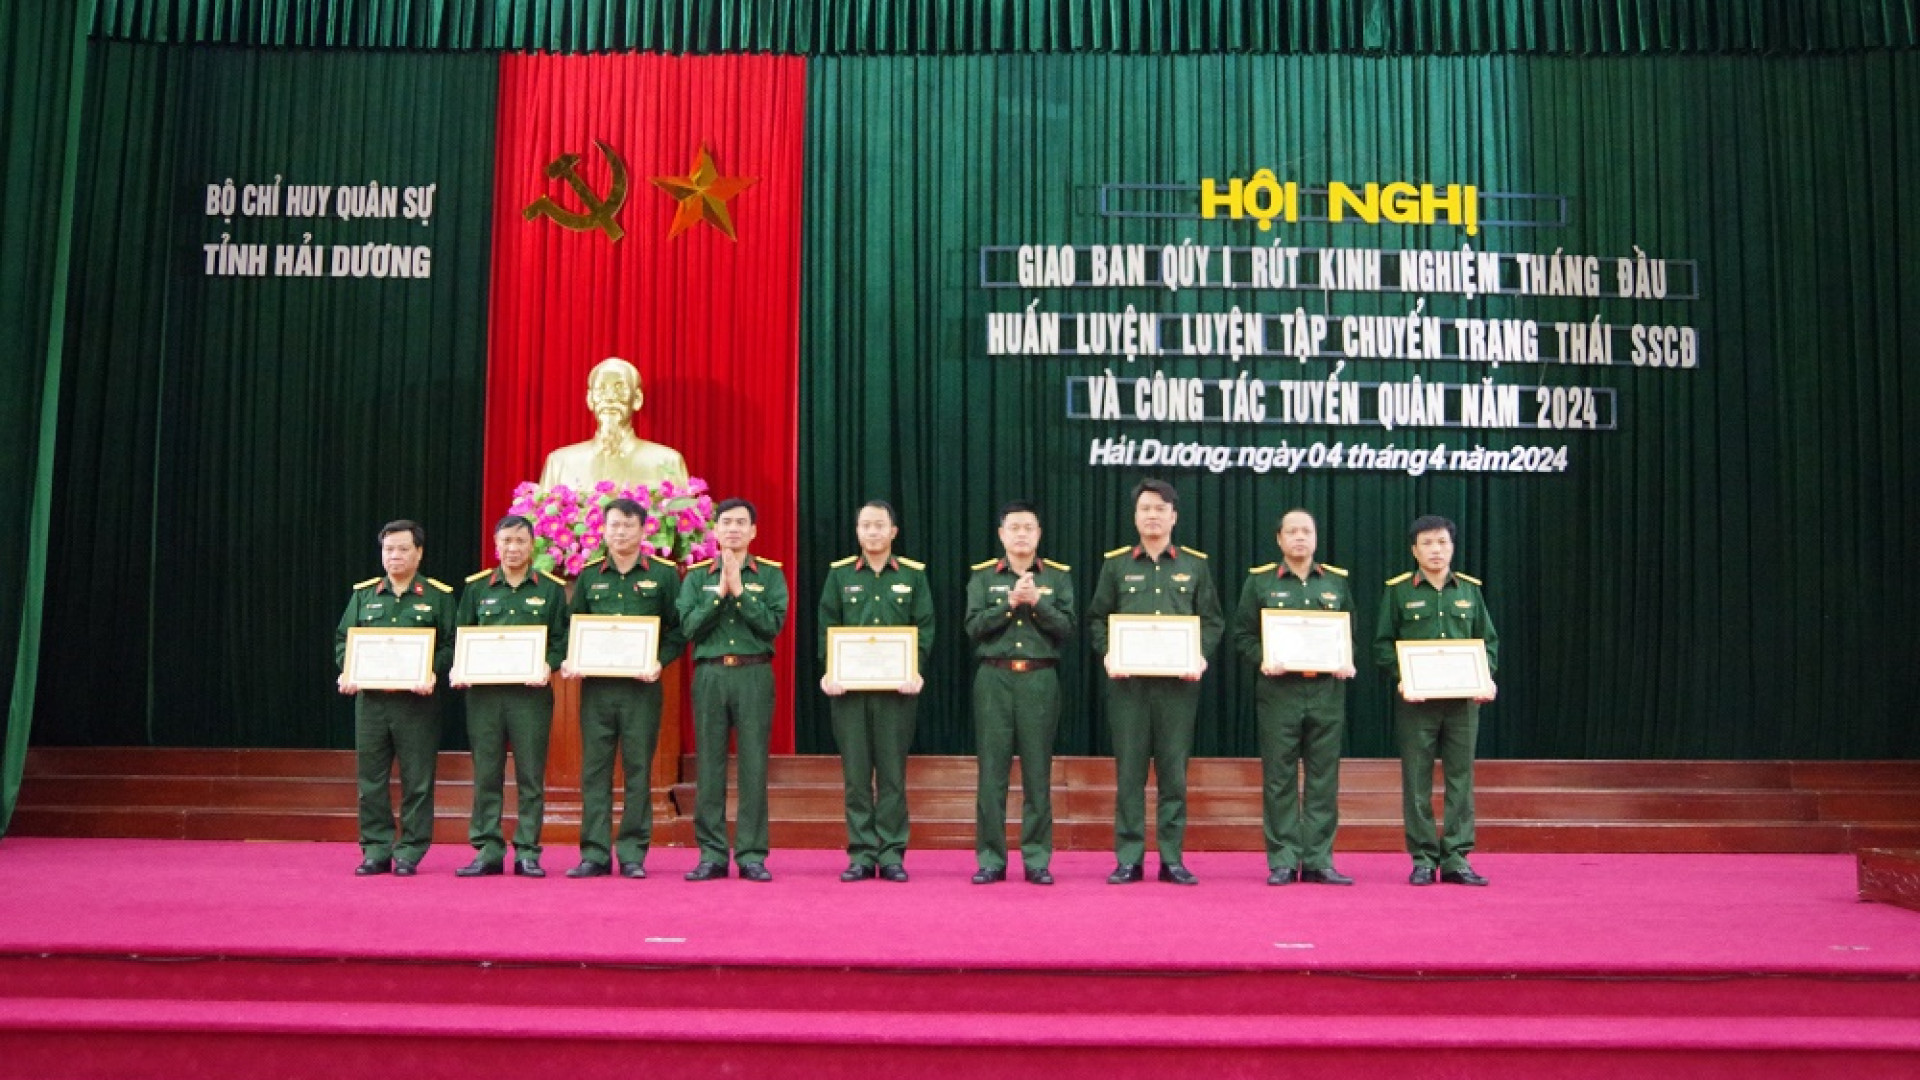 Bộ CHQS tỉnh Hải Dương rút kinh nghiệm huấn luyện tháng đầu và công tác tuyển quân năm 2024